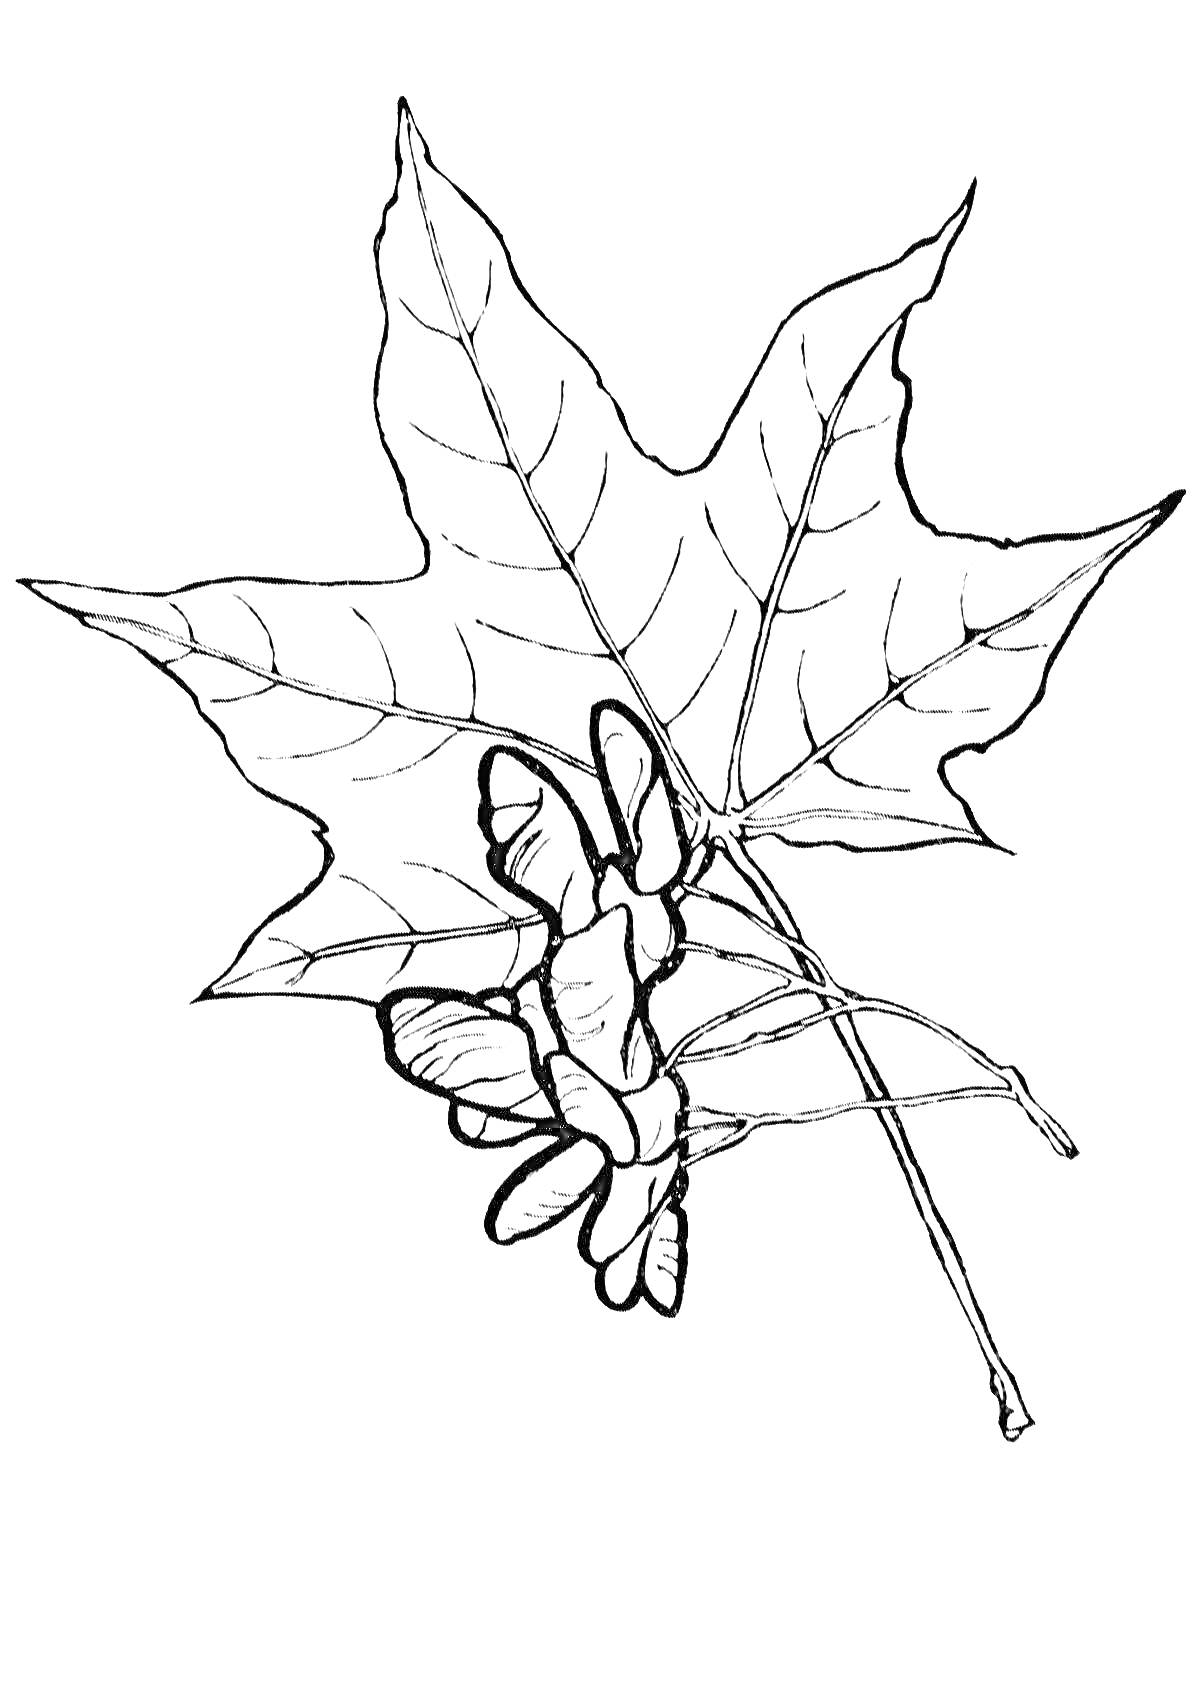 Кленовый лист с крылатыми кленовыми семенами.